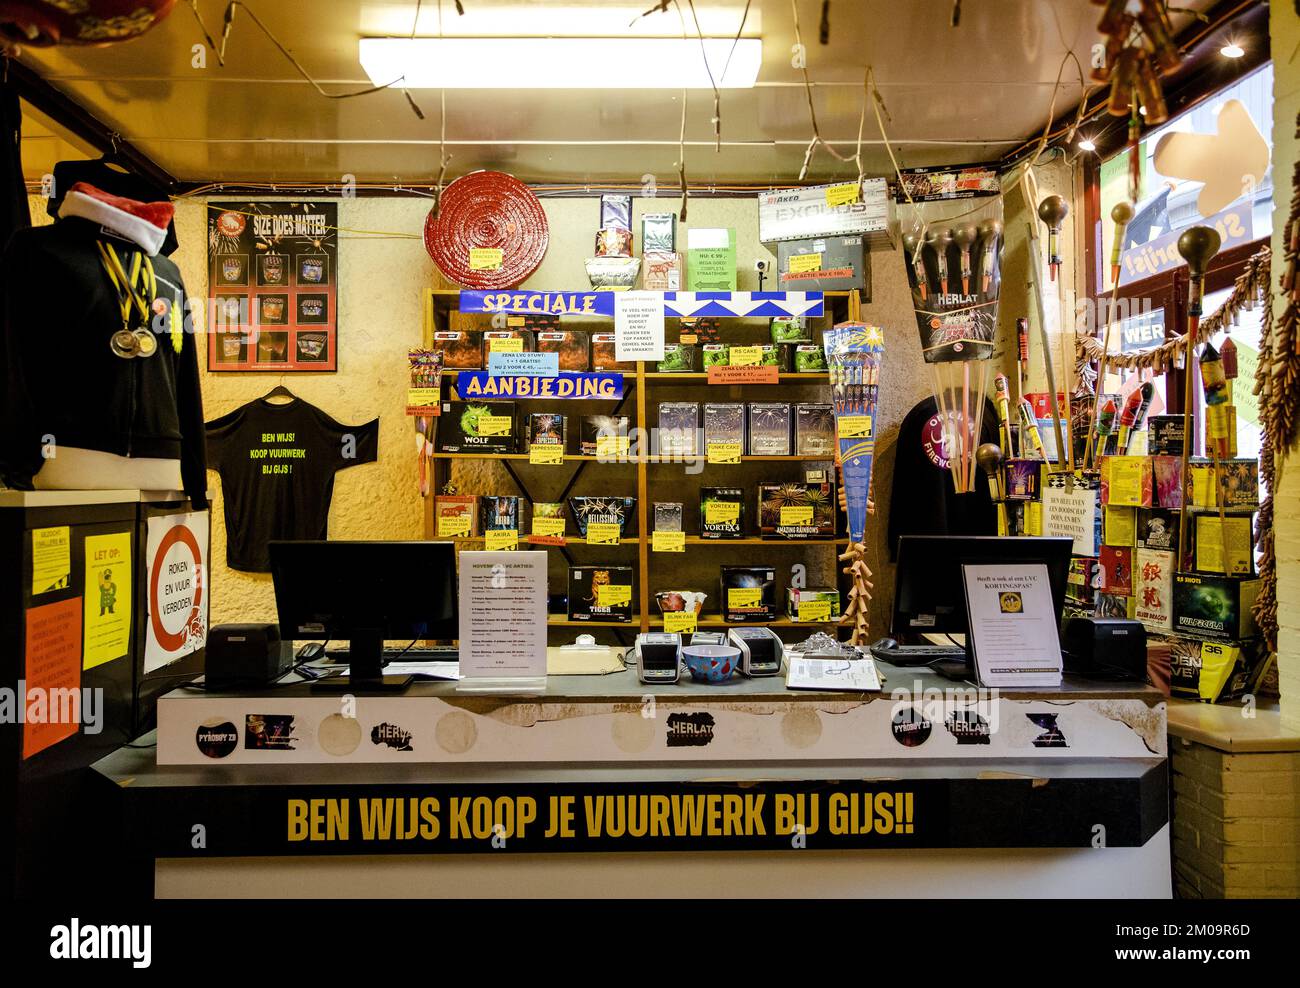 BAARLE-HERTOG - un negozio in cui vengono venduti fuochi d'artificio, appena oltre il confine in Belgio. ANP SEM VAN DER WAL olanda fuori - belgio fuori Foto Stock